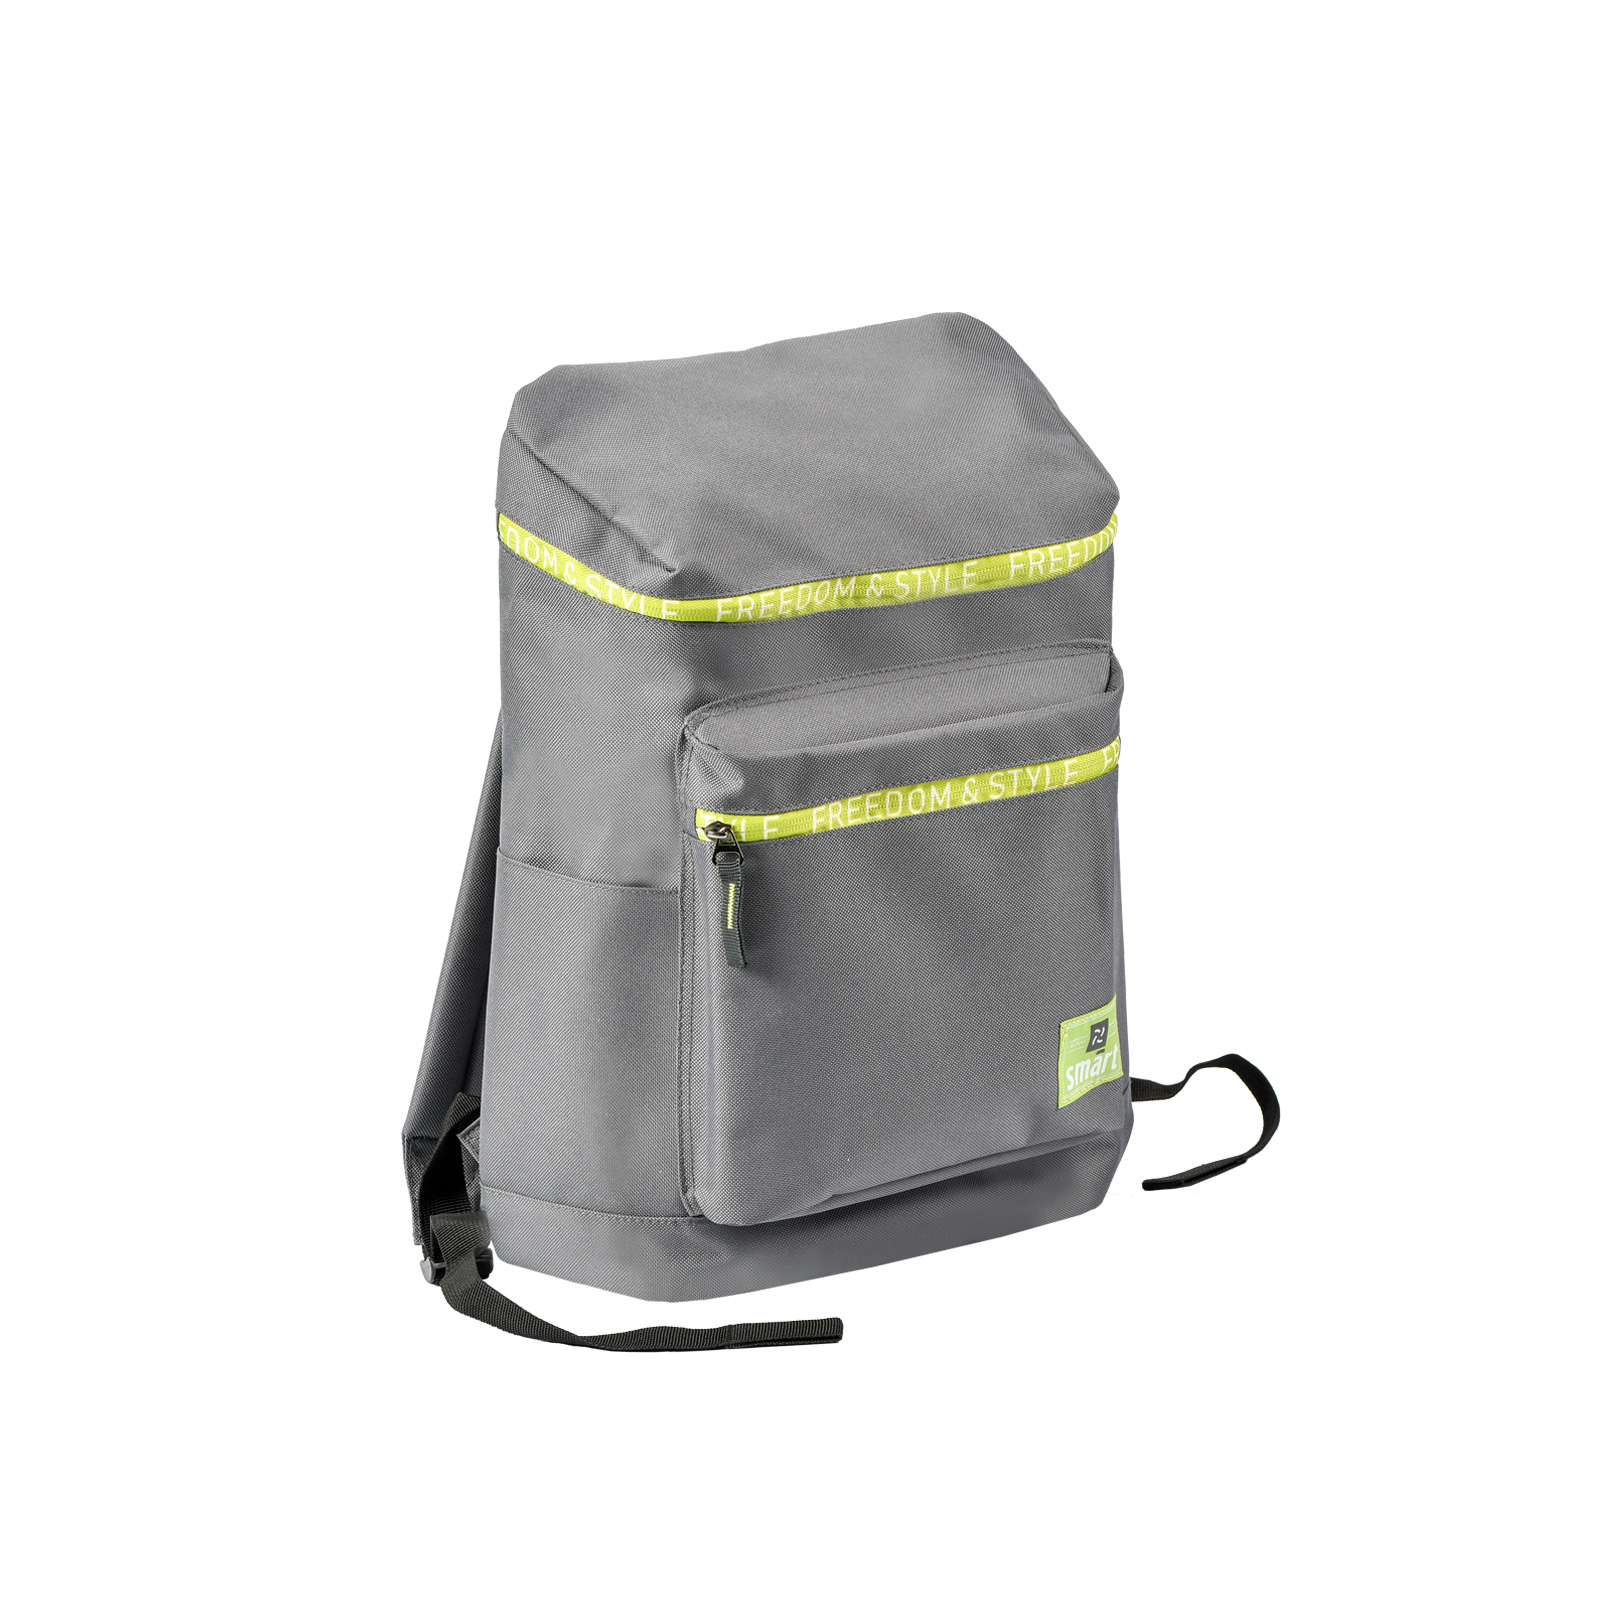 Рюкзак школьный Smart TN-04 Lucas серый (558451)